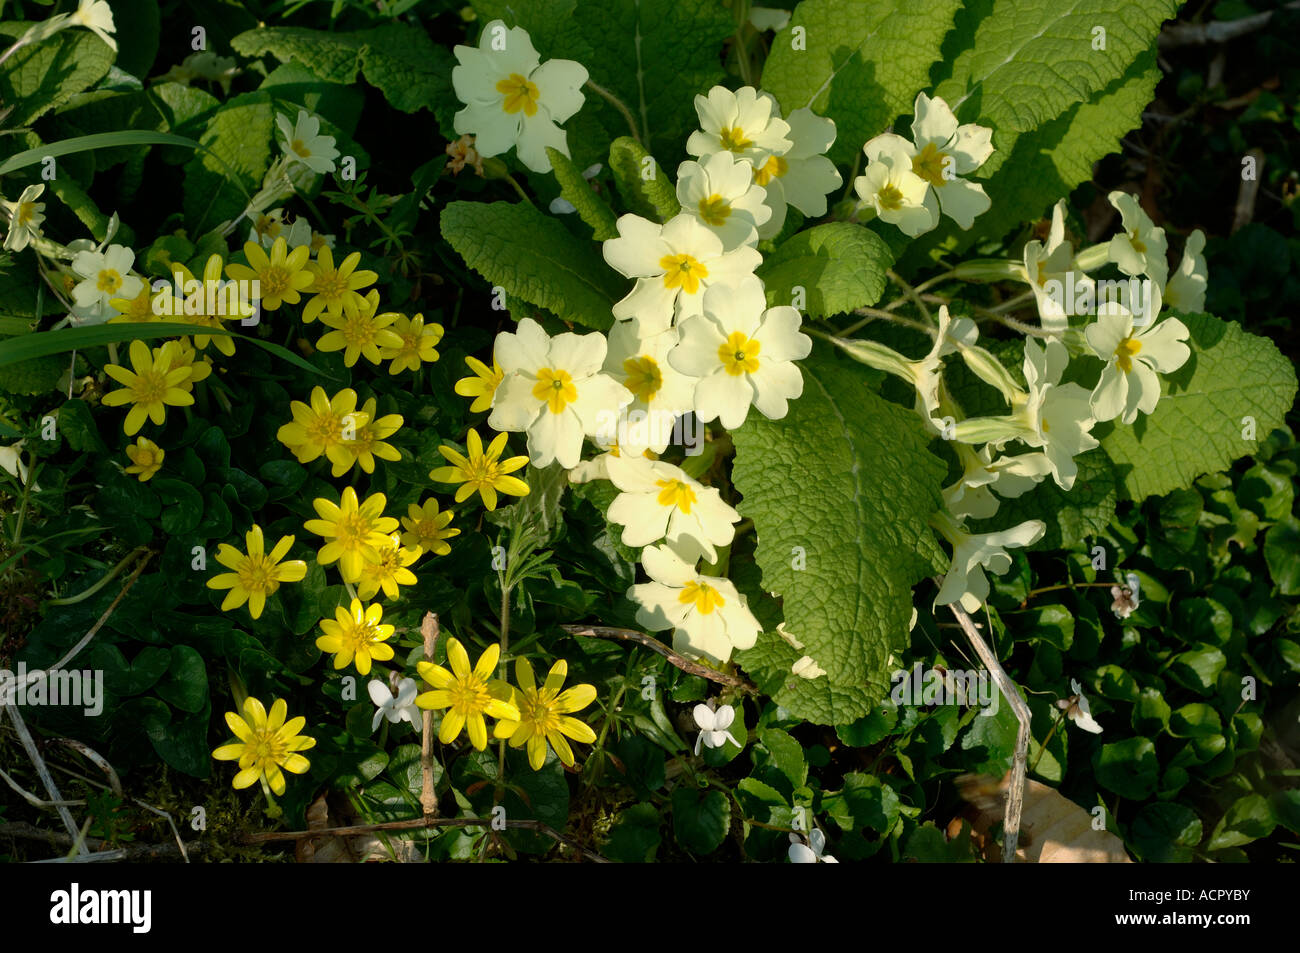 Primrose (Primula vulgaris) lesser celandine (Ficaria verna)springtime woodland flowers Stock Photo